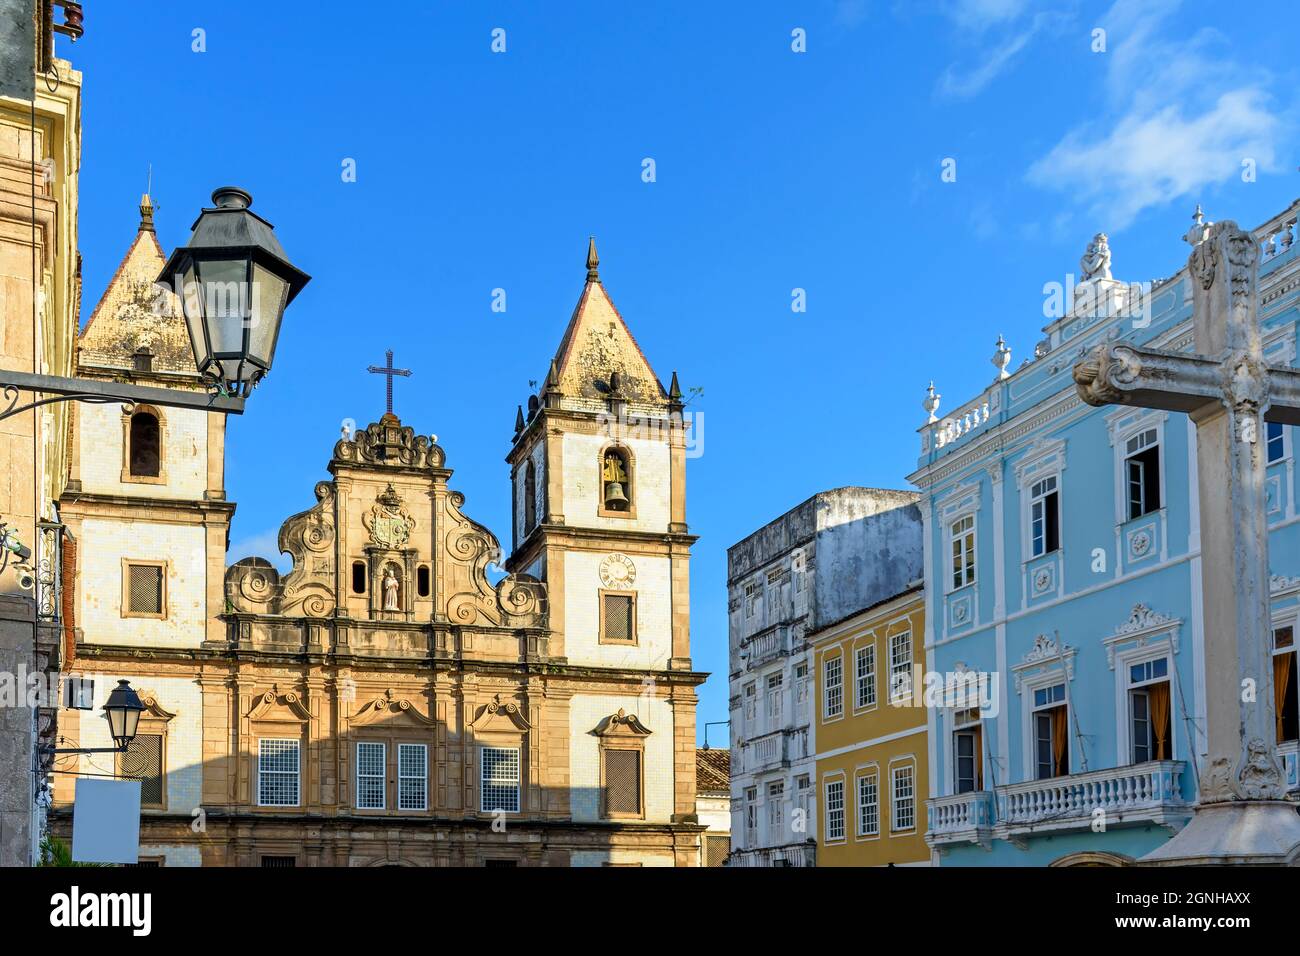 Facciata di una vecchia chiesa storica e case colorate in stile coloniale nella piazza centrale del quartiere Pelourinho nella città di Salvador, Bahia Foto Stock